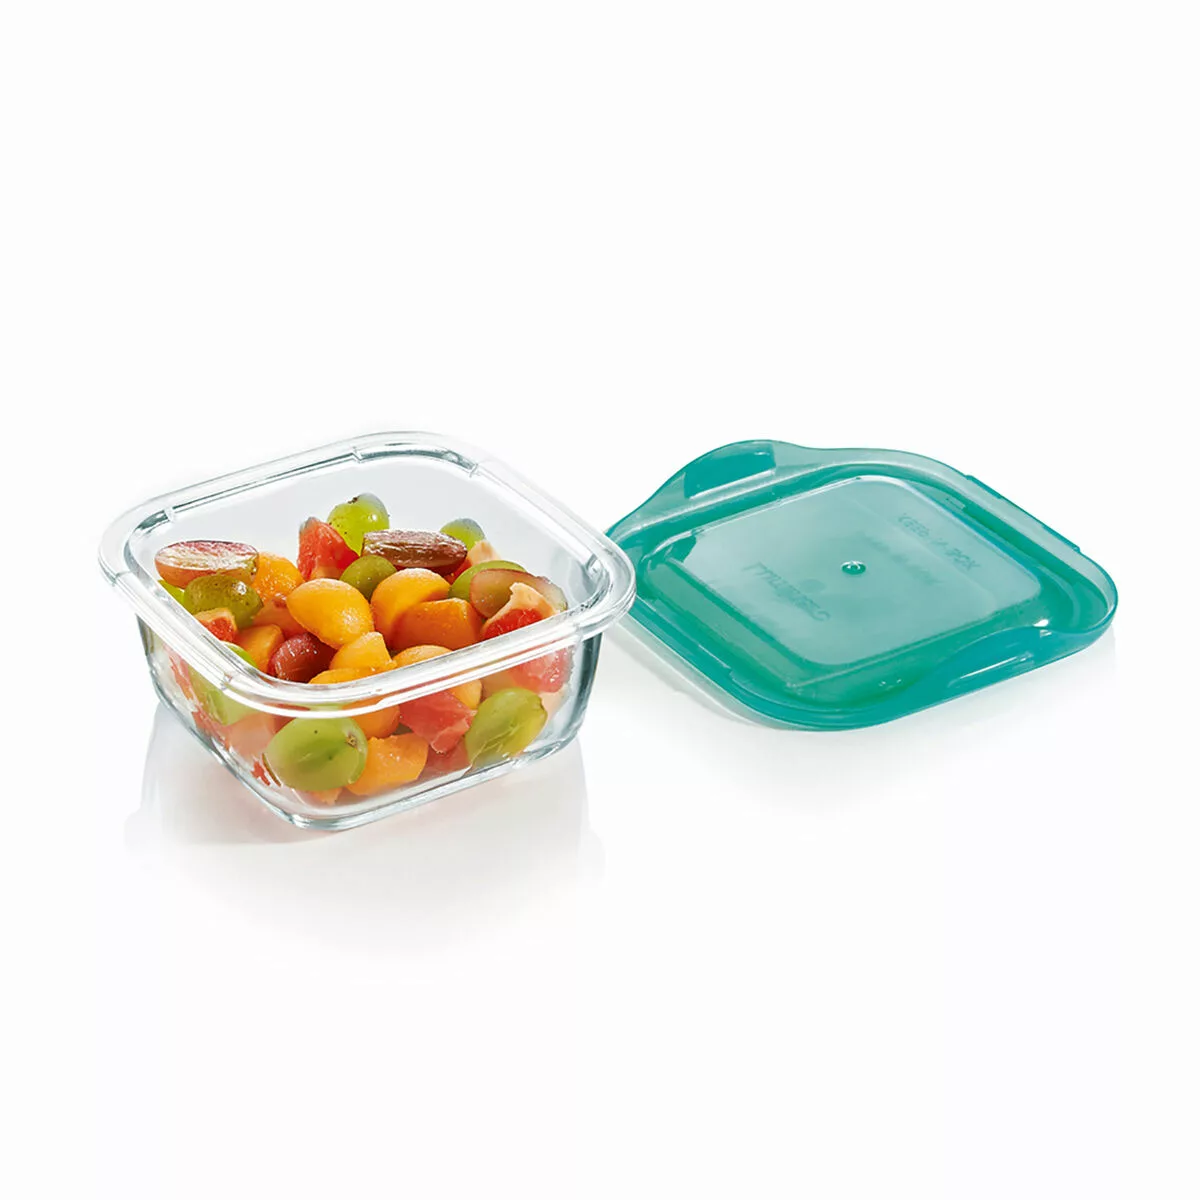 Viereckige Lunchbox Mit Deckel Luminarc Keep'n Lagon 760 Ml 13 X 6 Cm Türki günstig online kaufen